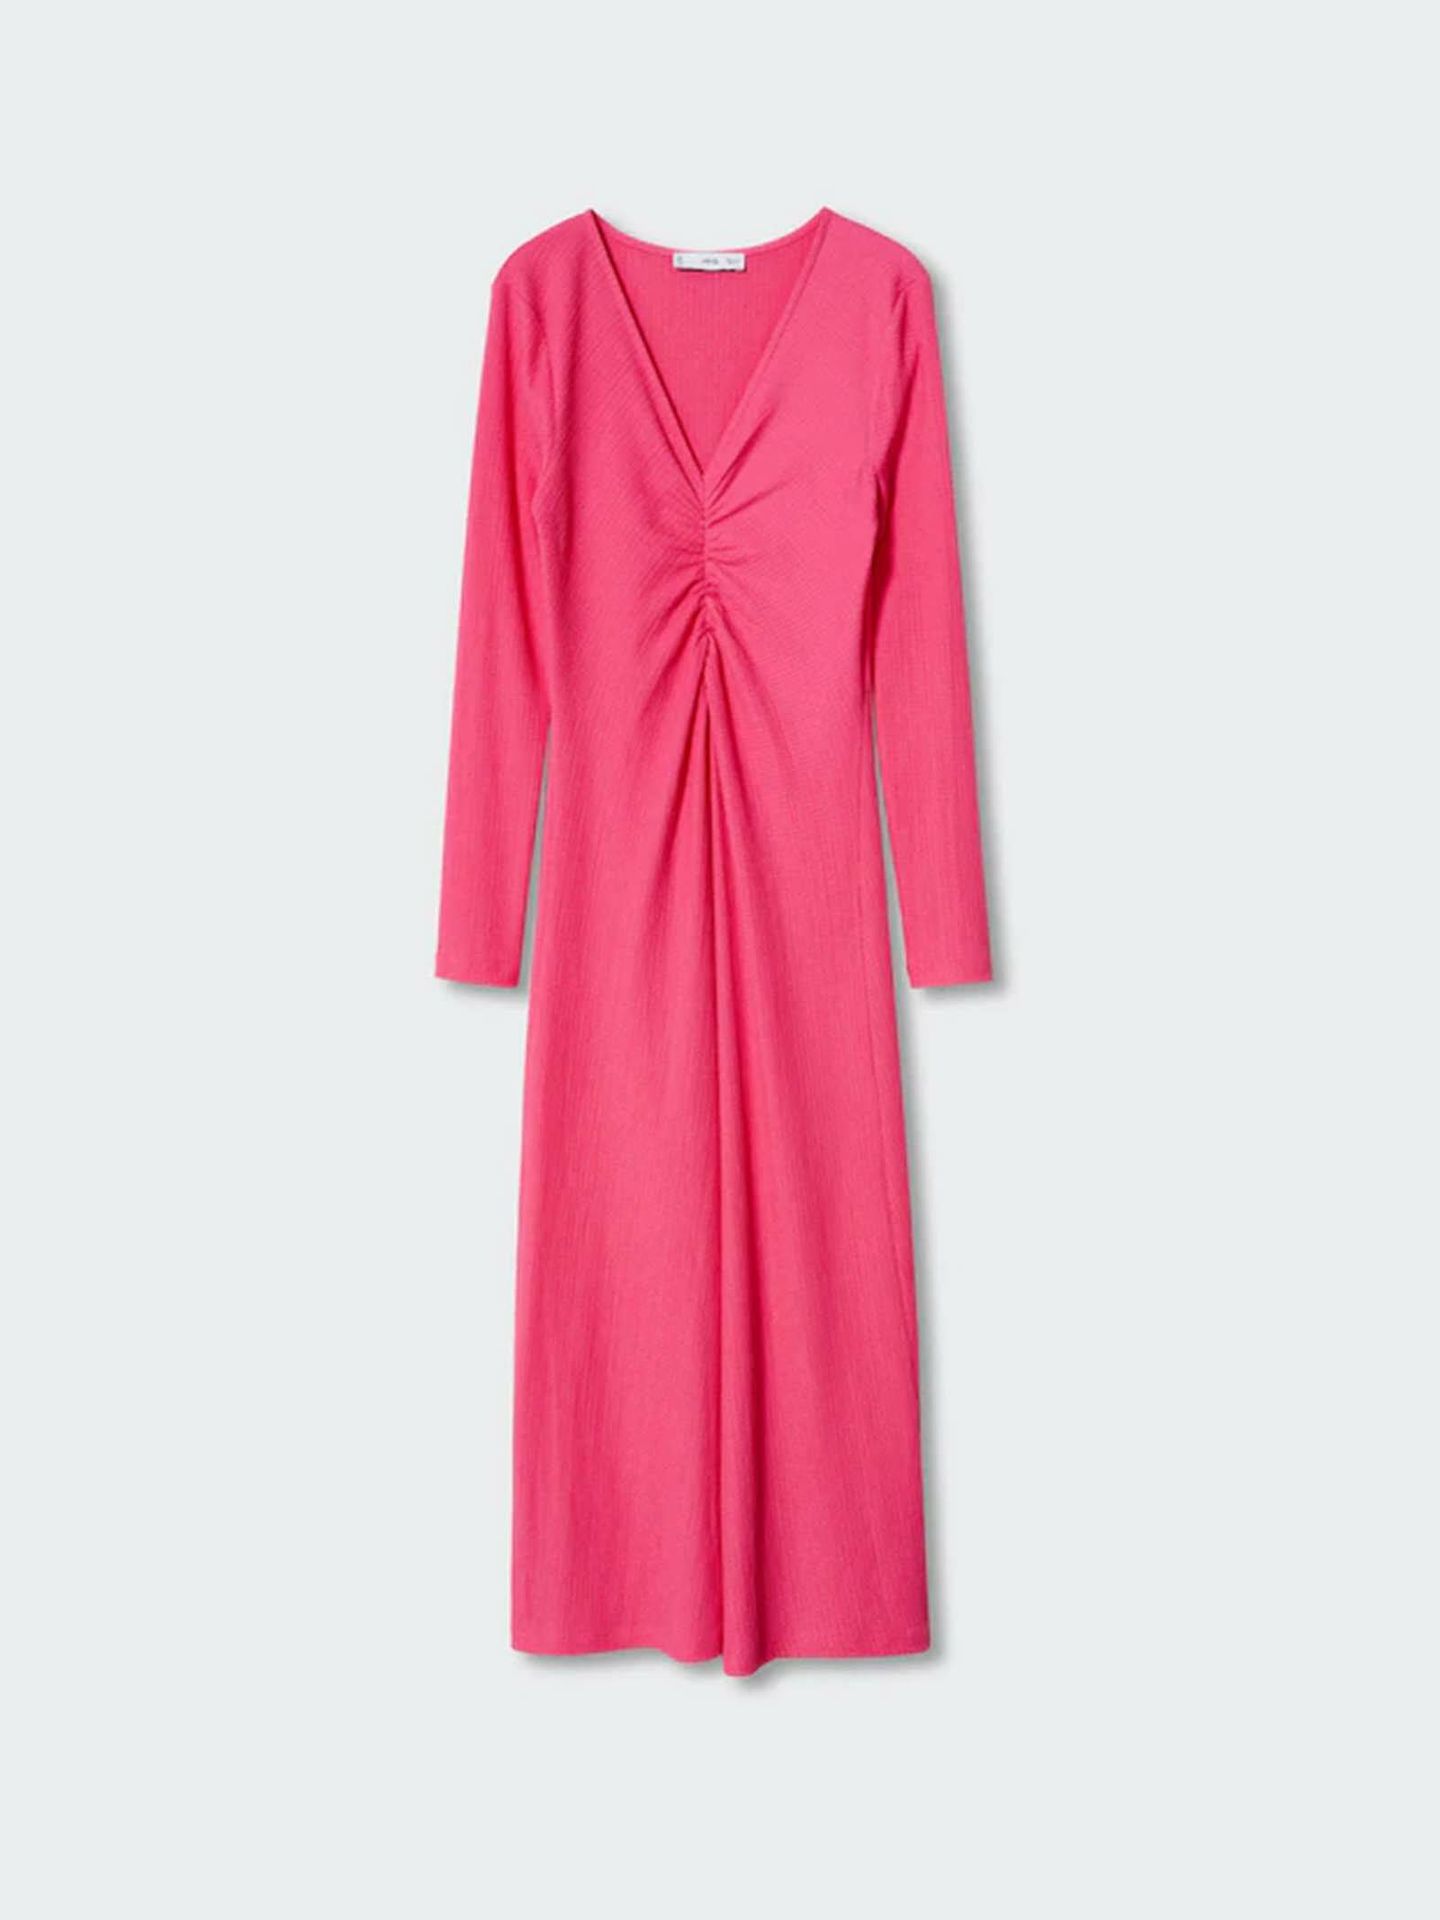 El vestido rosa de Mango ideal para tallas curvy al puro estilo 'barbiecore'. (Cortesía)